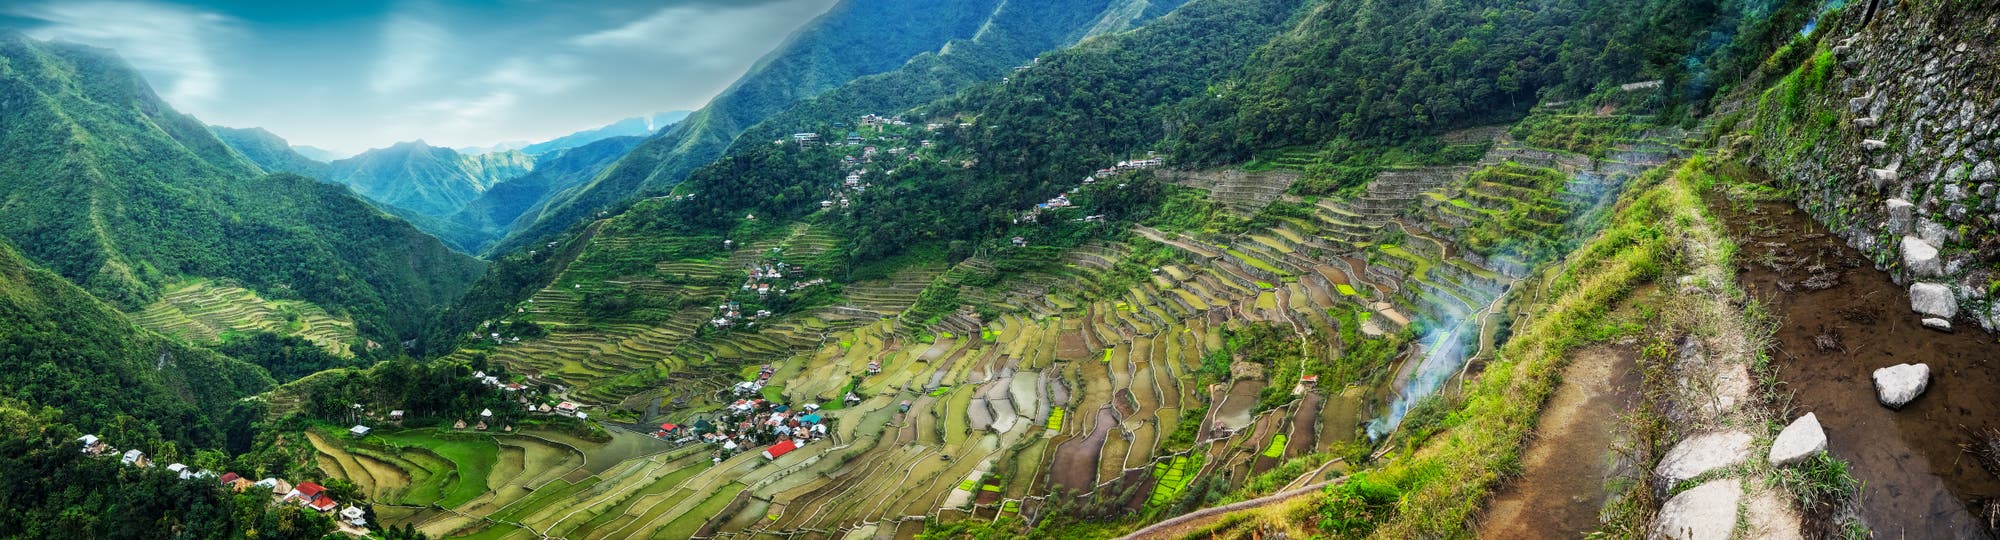 Philippinische Reisfelder